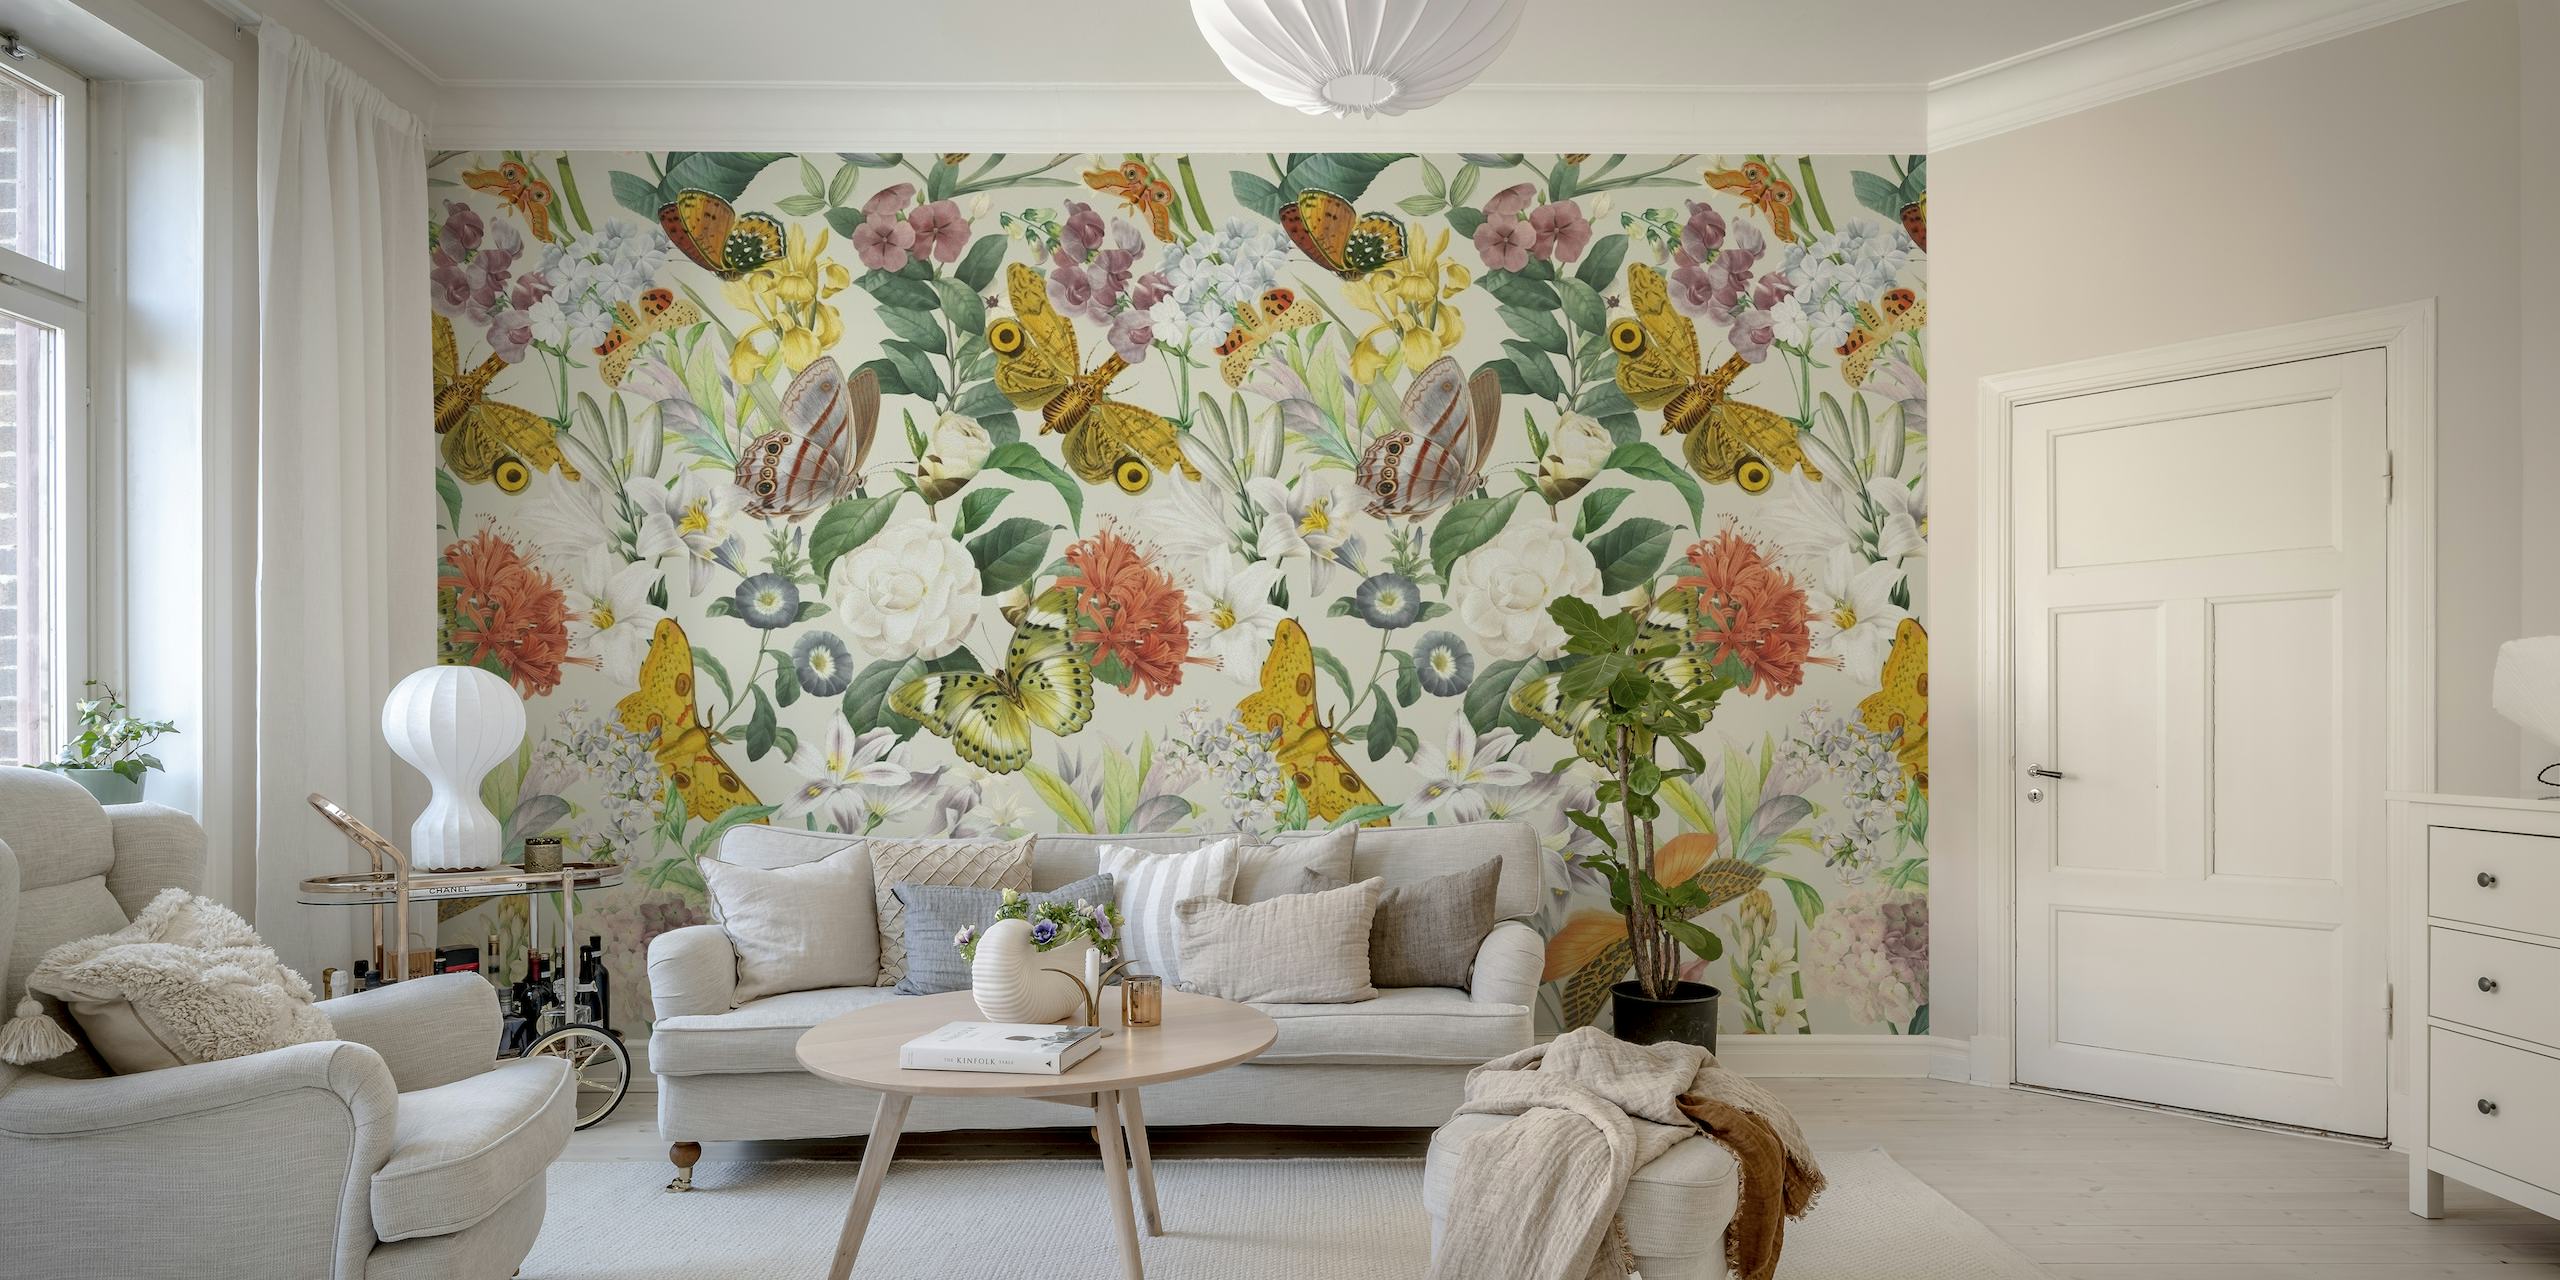 Um mural de parede com um lindo padrão de mariposas, borboletas e elementos florais em tons pastéis suaves.